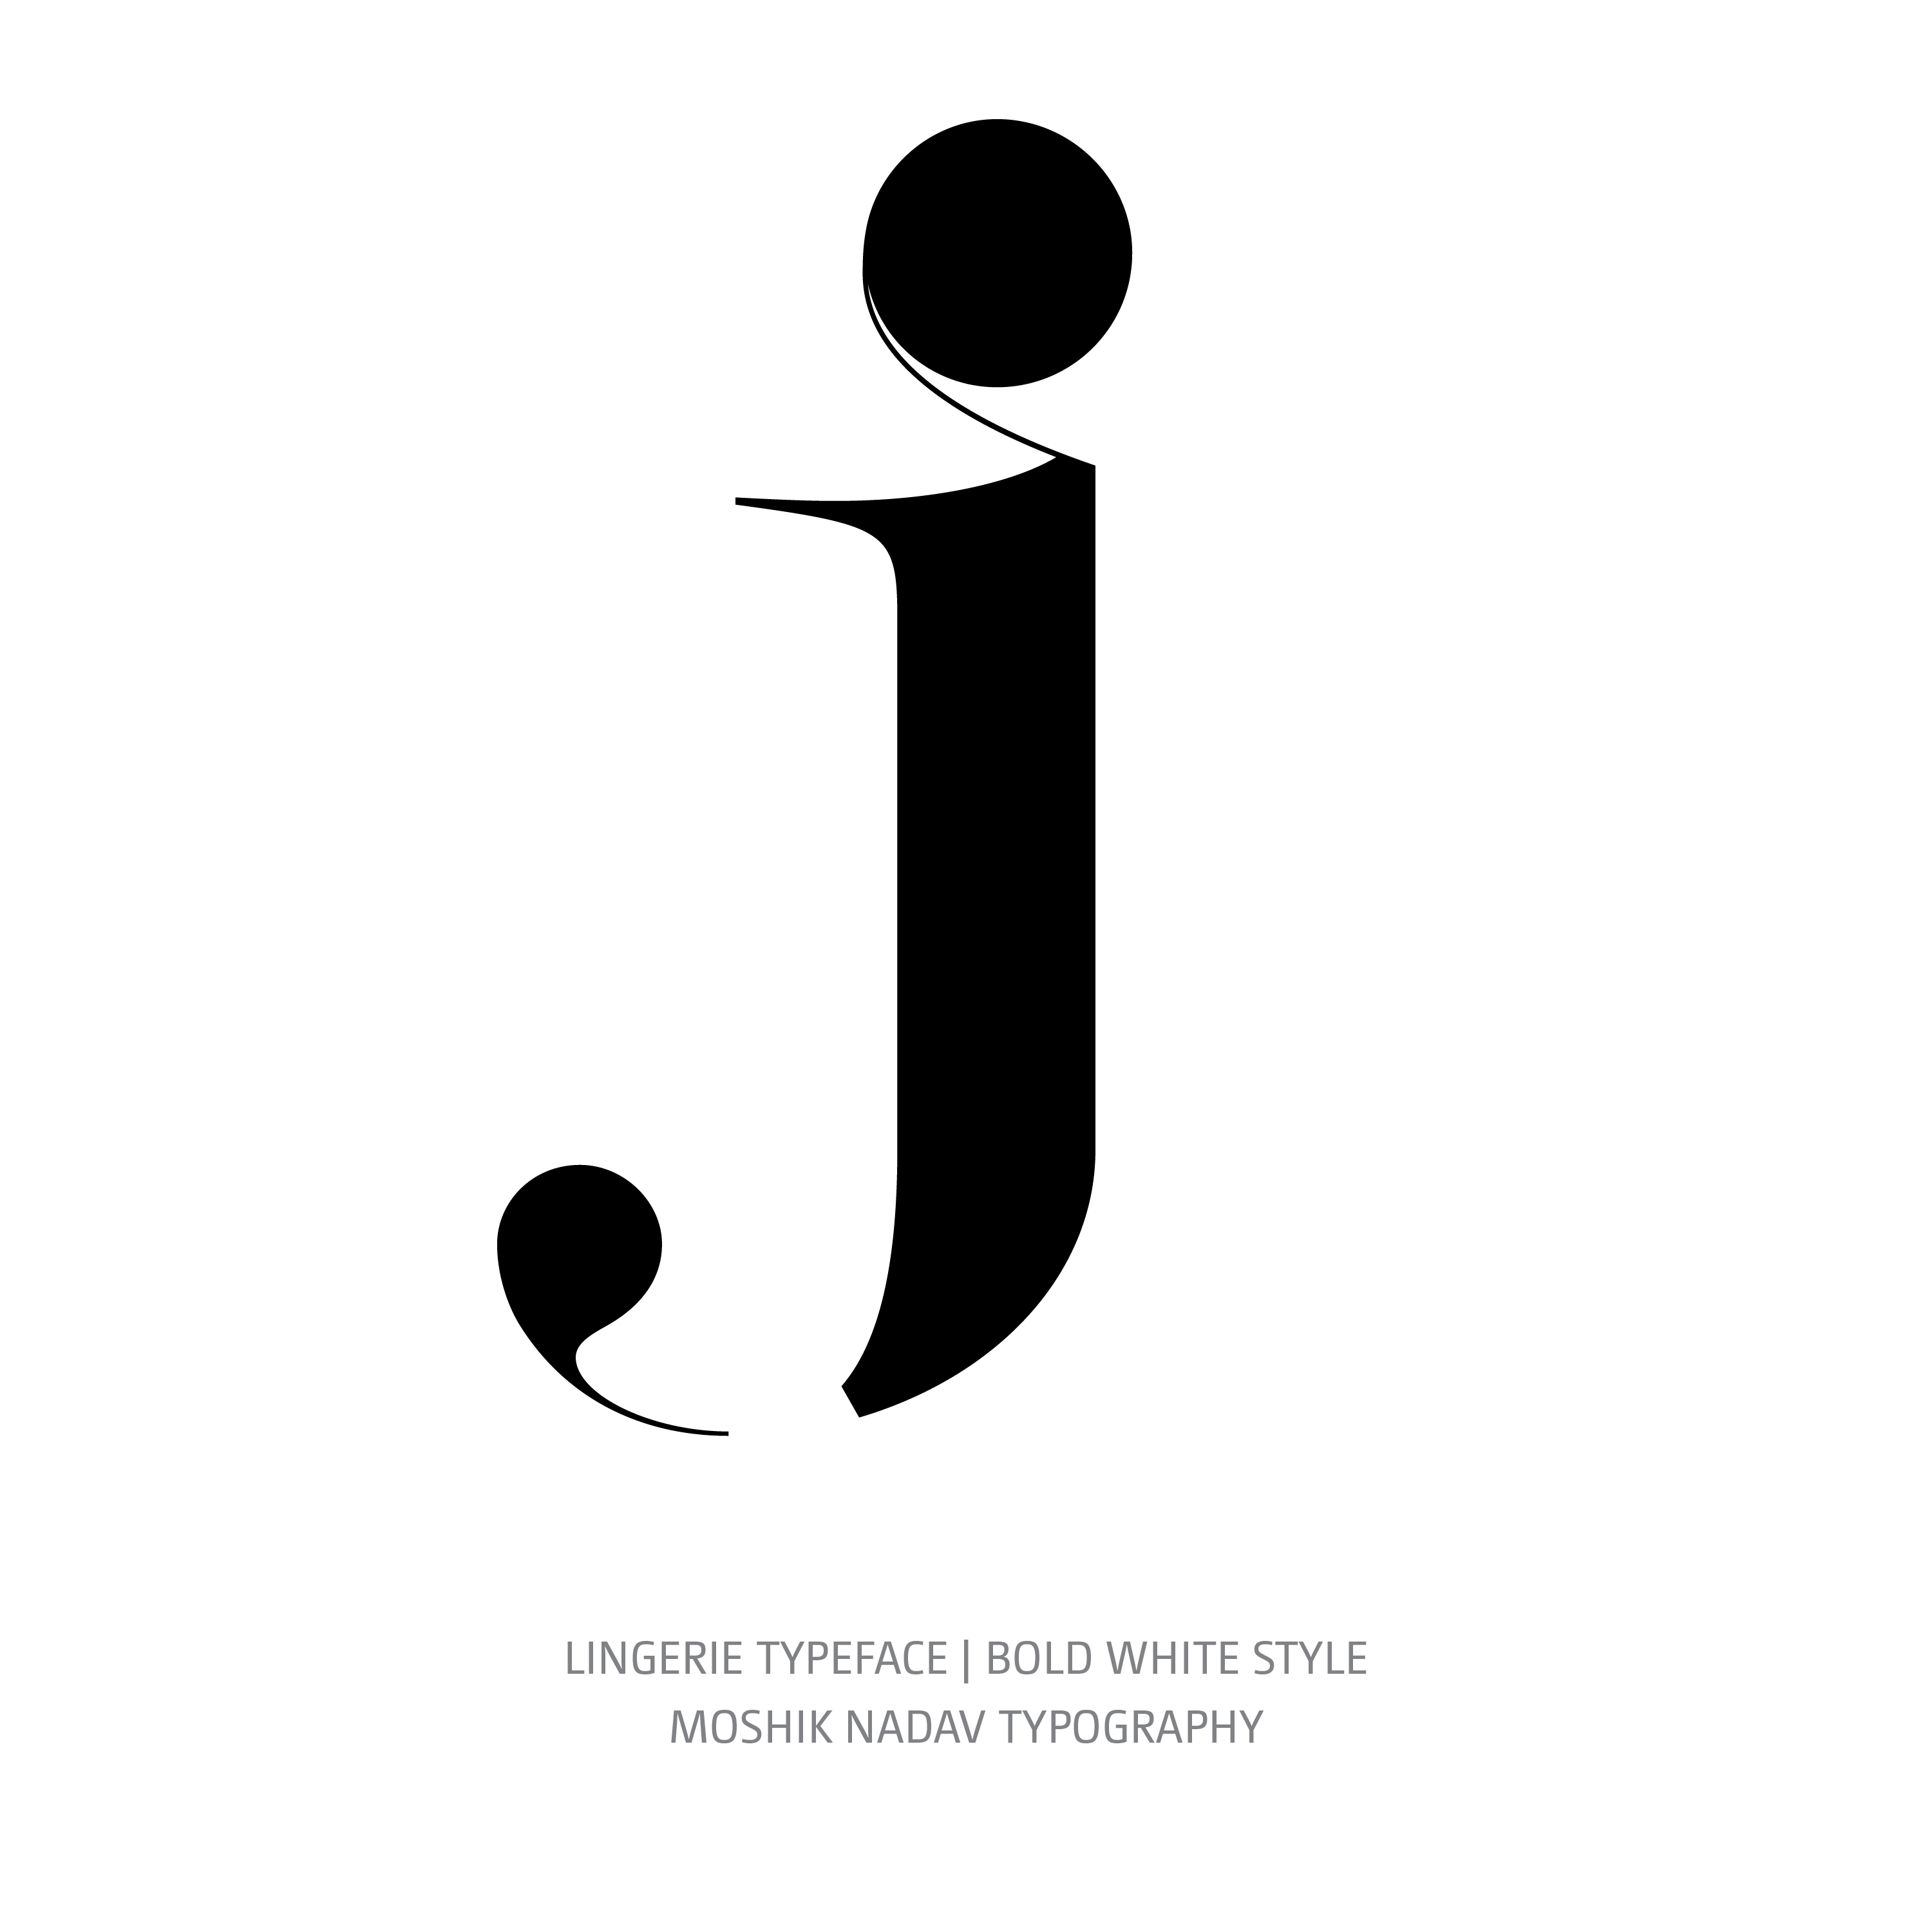 Lingerie Typeface Bold White j